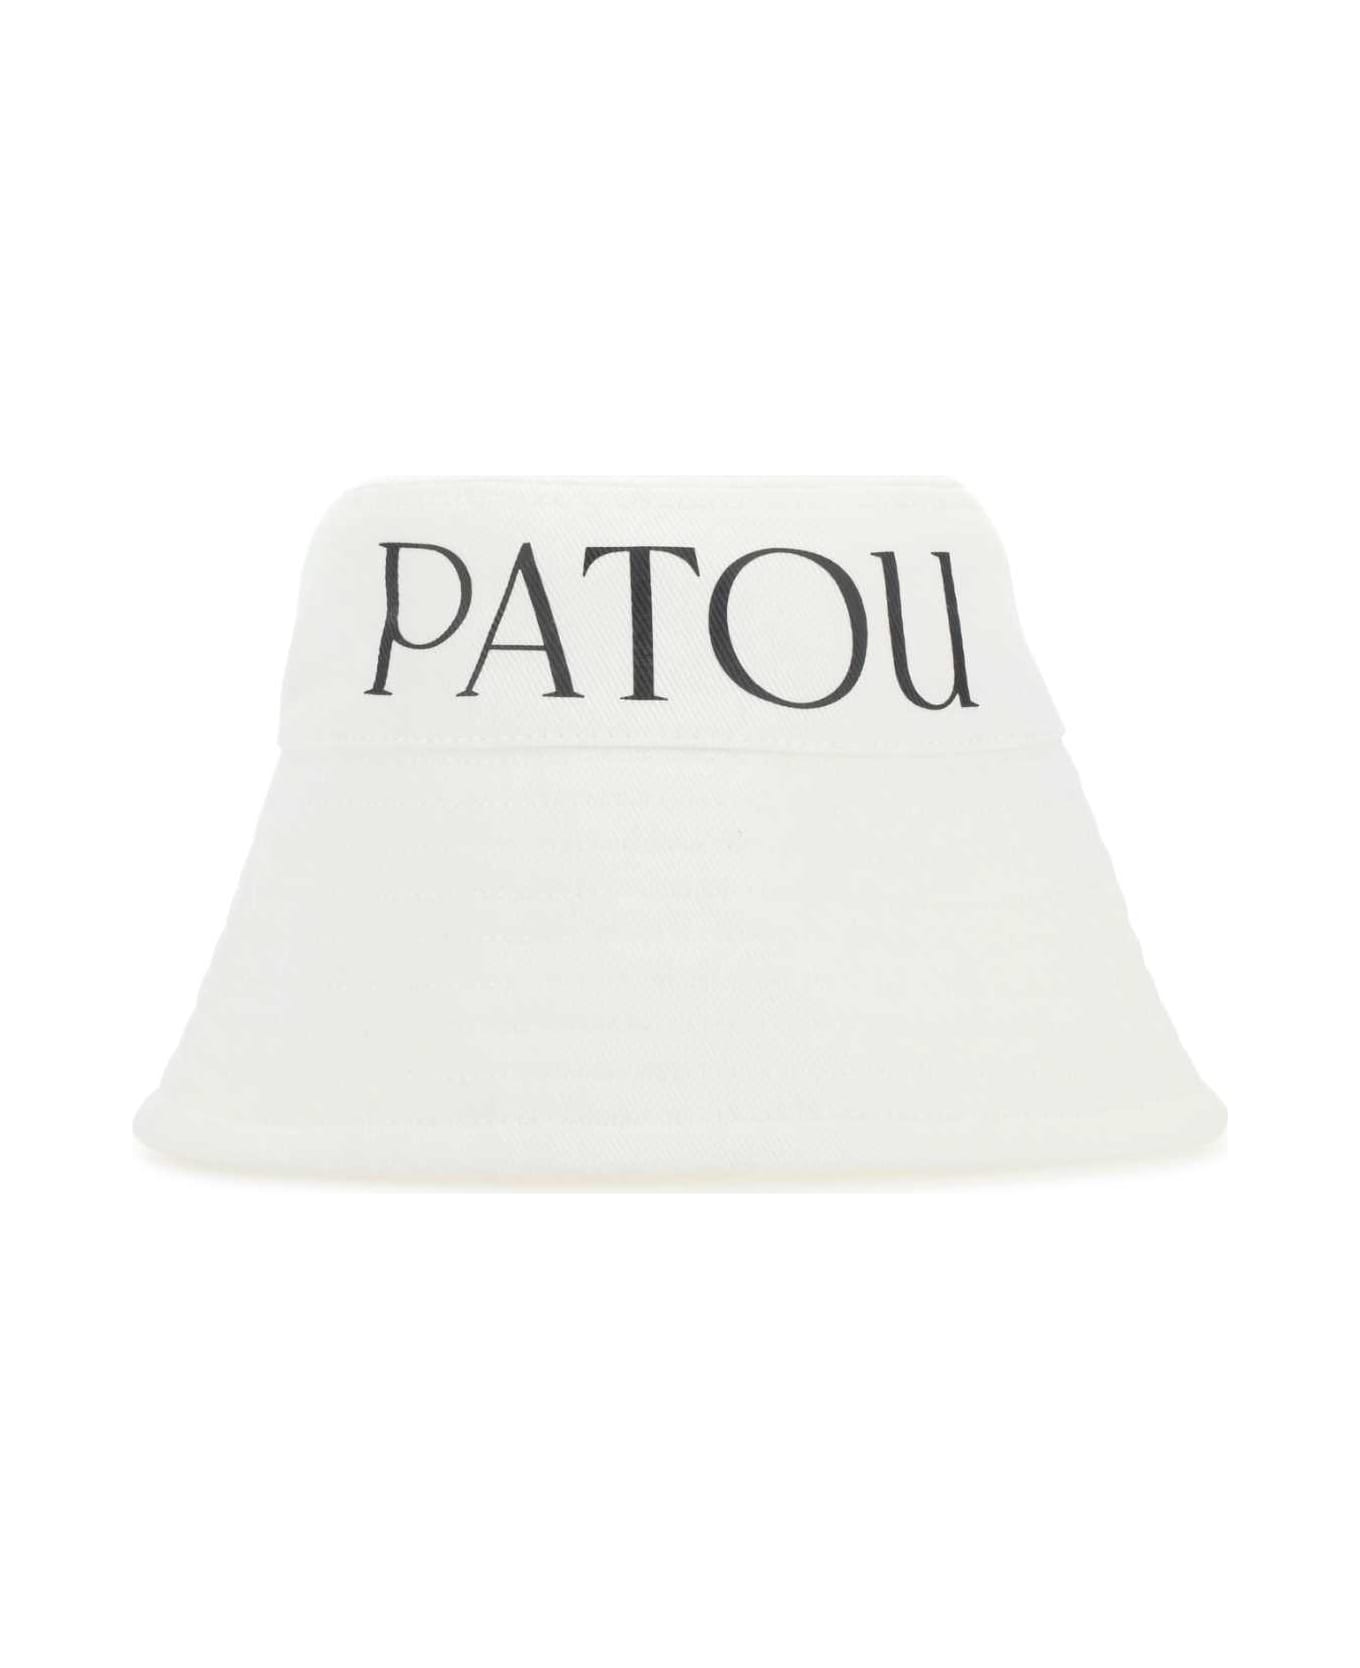 Patou White Canvas Hat - 001W 帽子